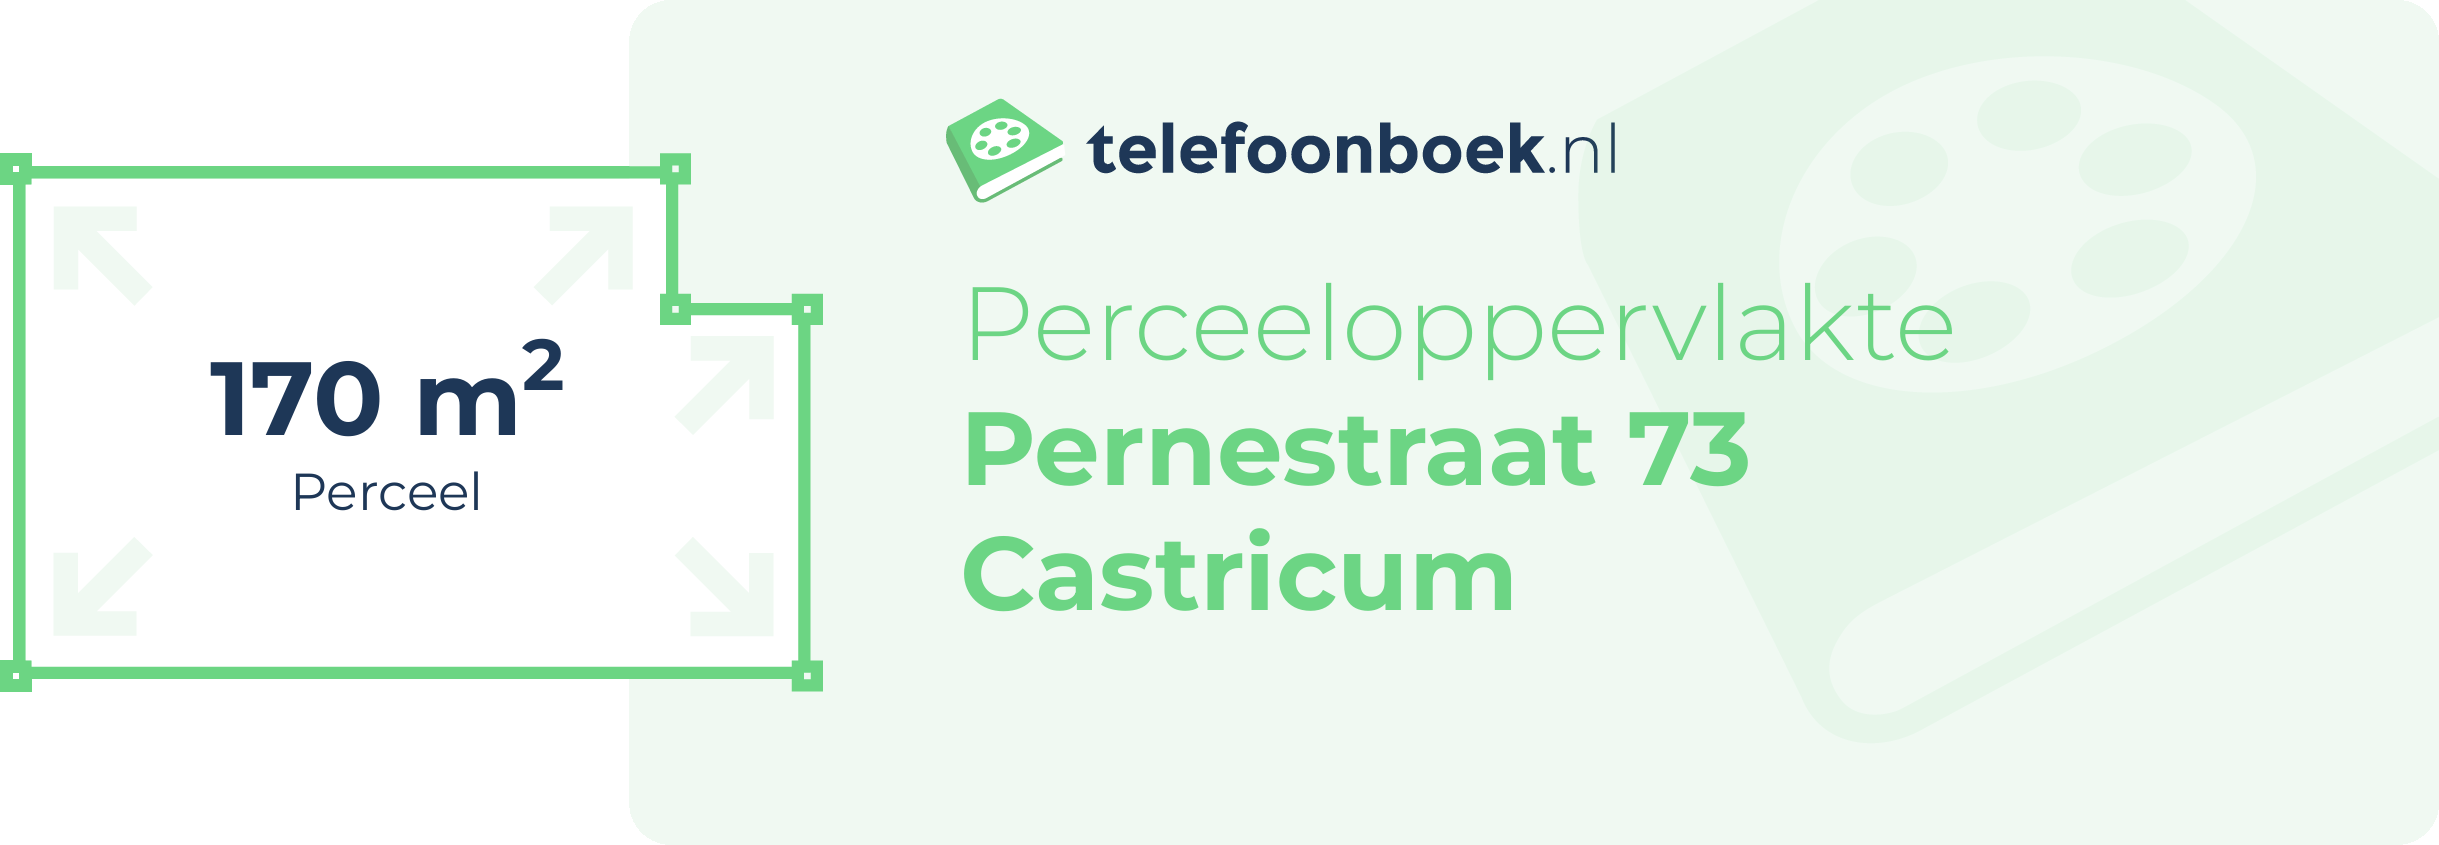 Perceeloppervlakte Pernestraat 73 Castricum